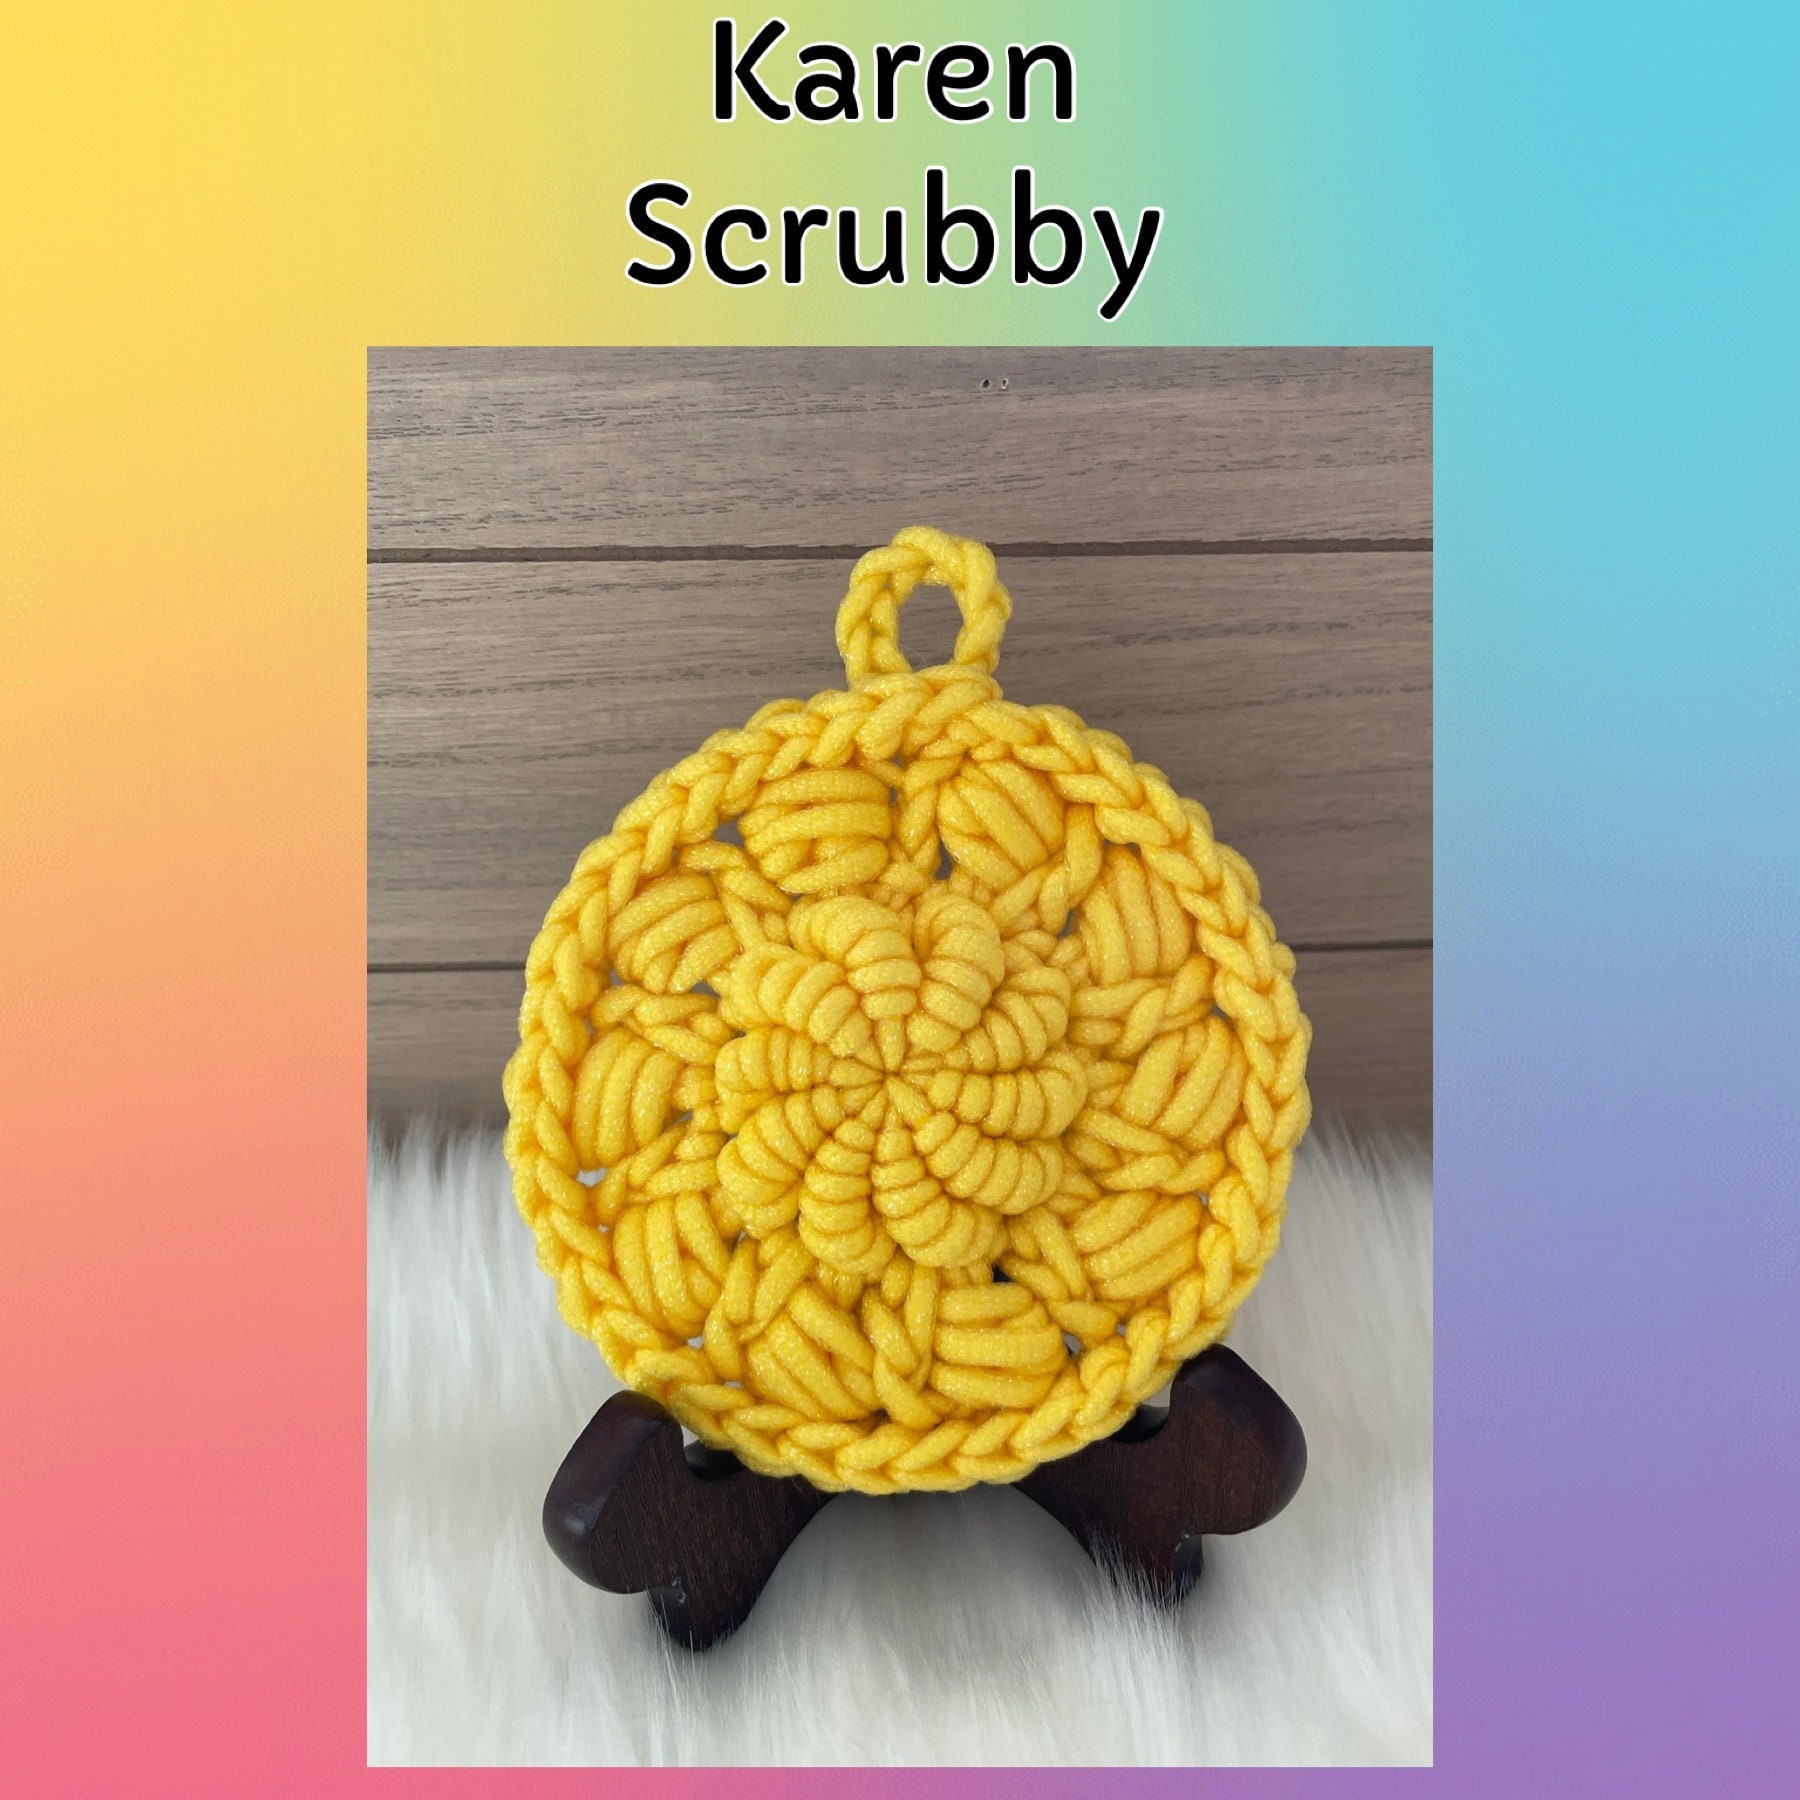 Yarn Bee Scrub-Ology Scrub It Yarn, Hobby Lobby